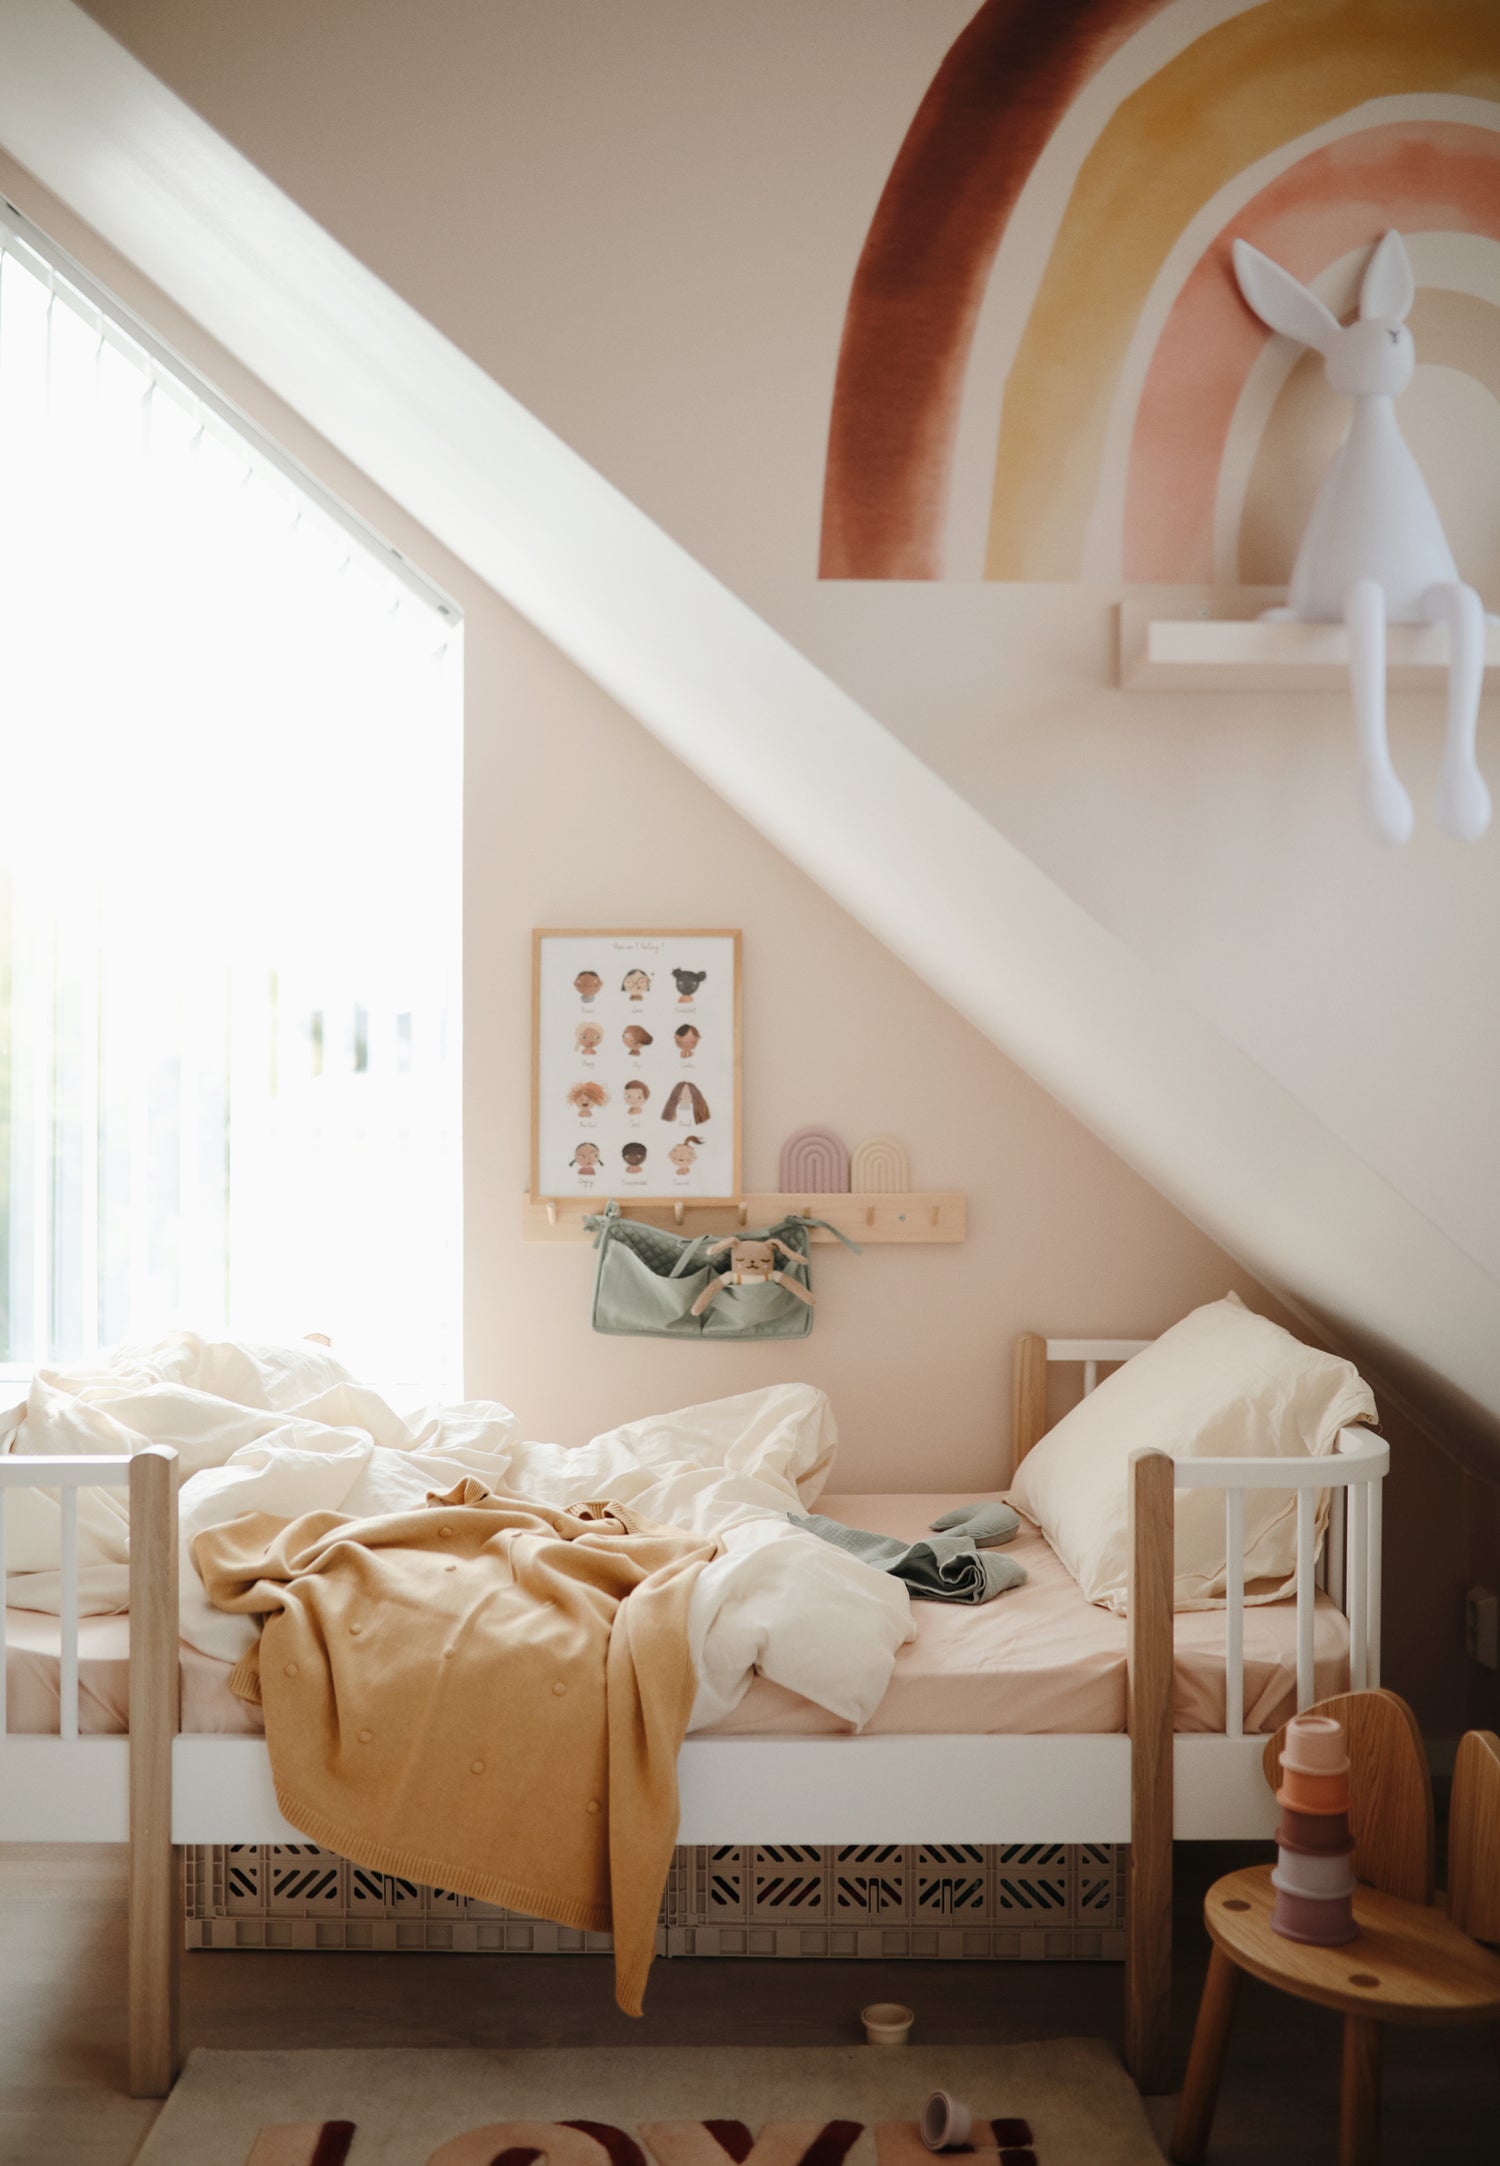 Photo ambiance : couverture mushie à pois délicatement posée sur un lit d'enfant d'environ 5 ans. Chambre aux tons pastel, rose et jaune. Meubles moderne et épuré bois et blanc. Tapis "love".